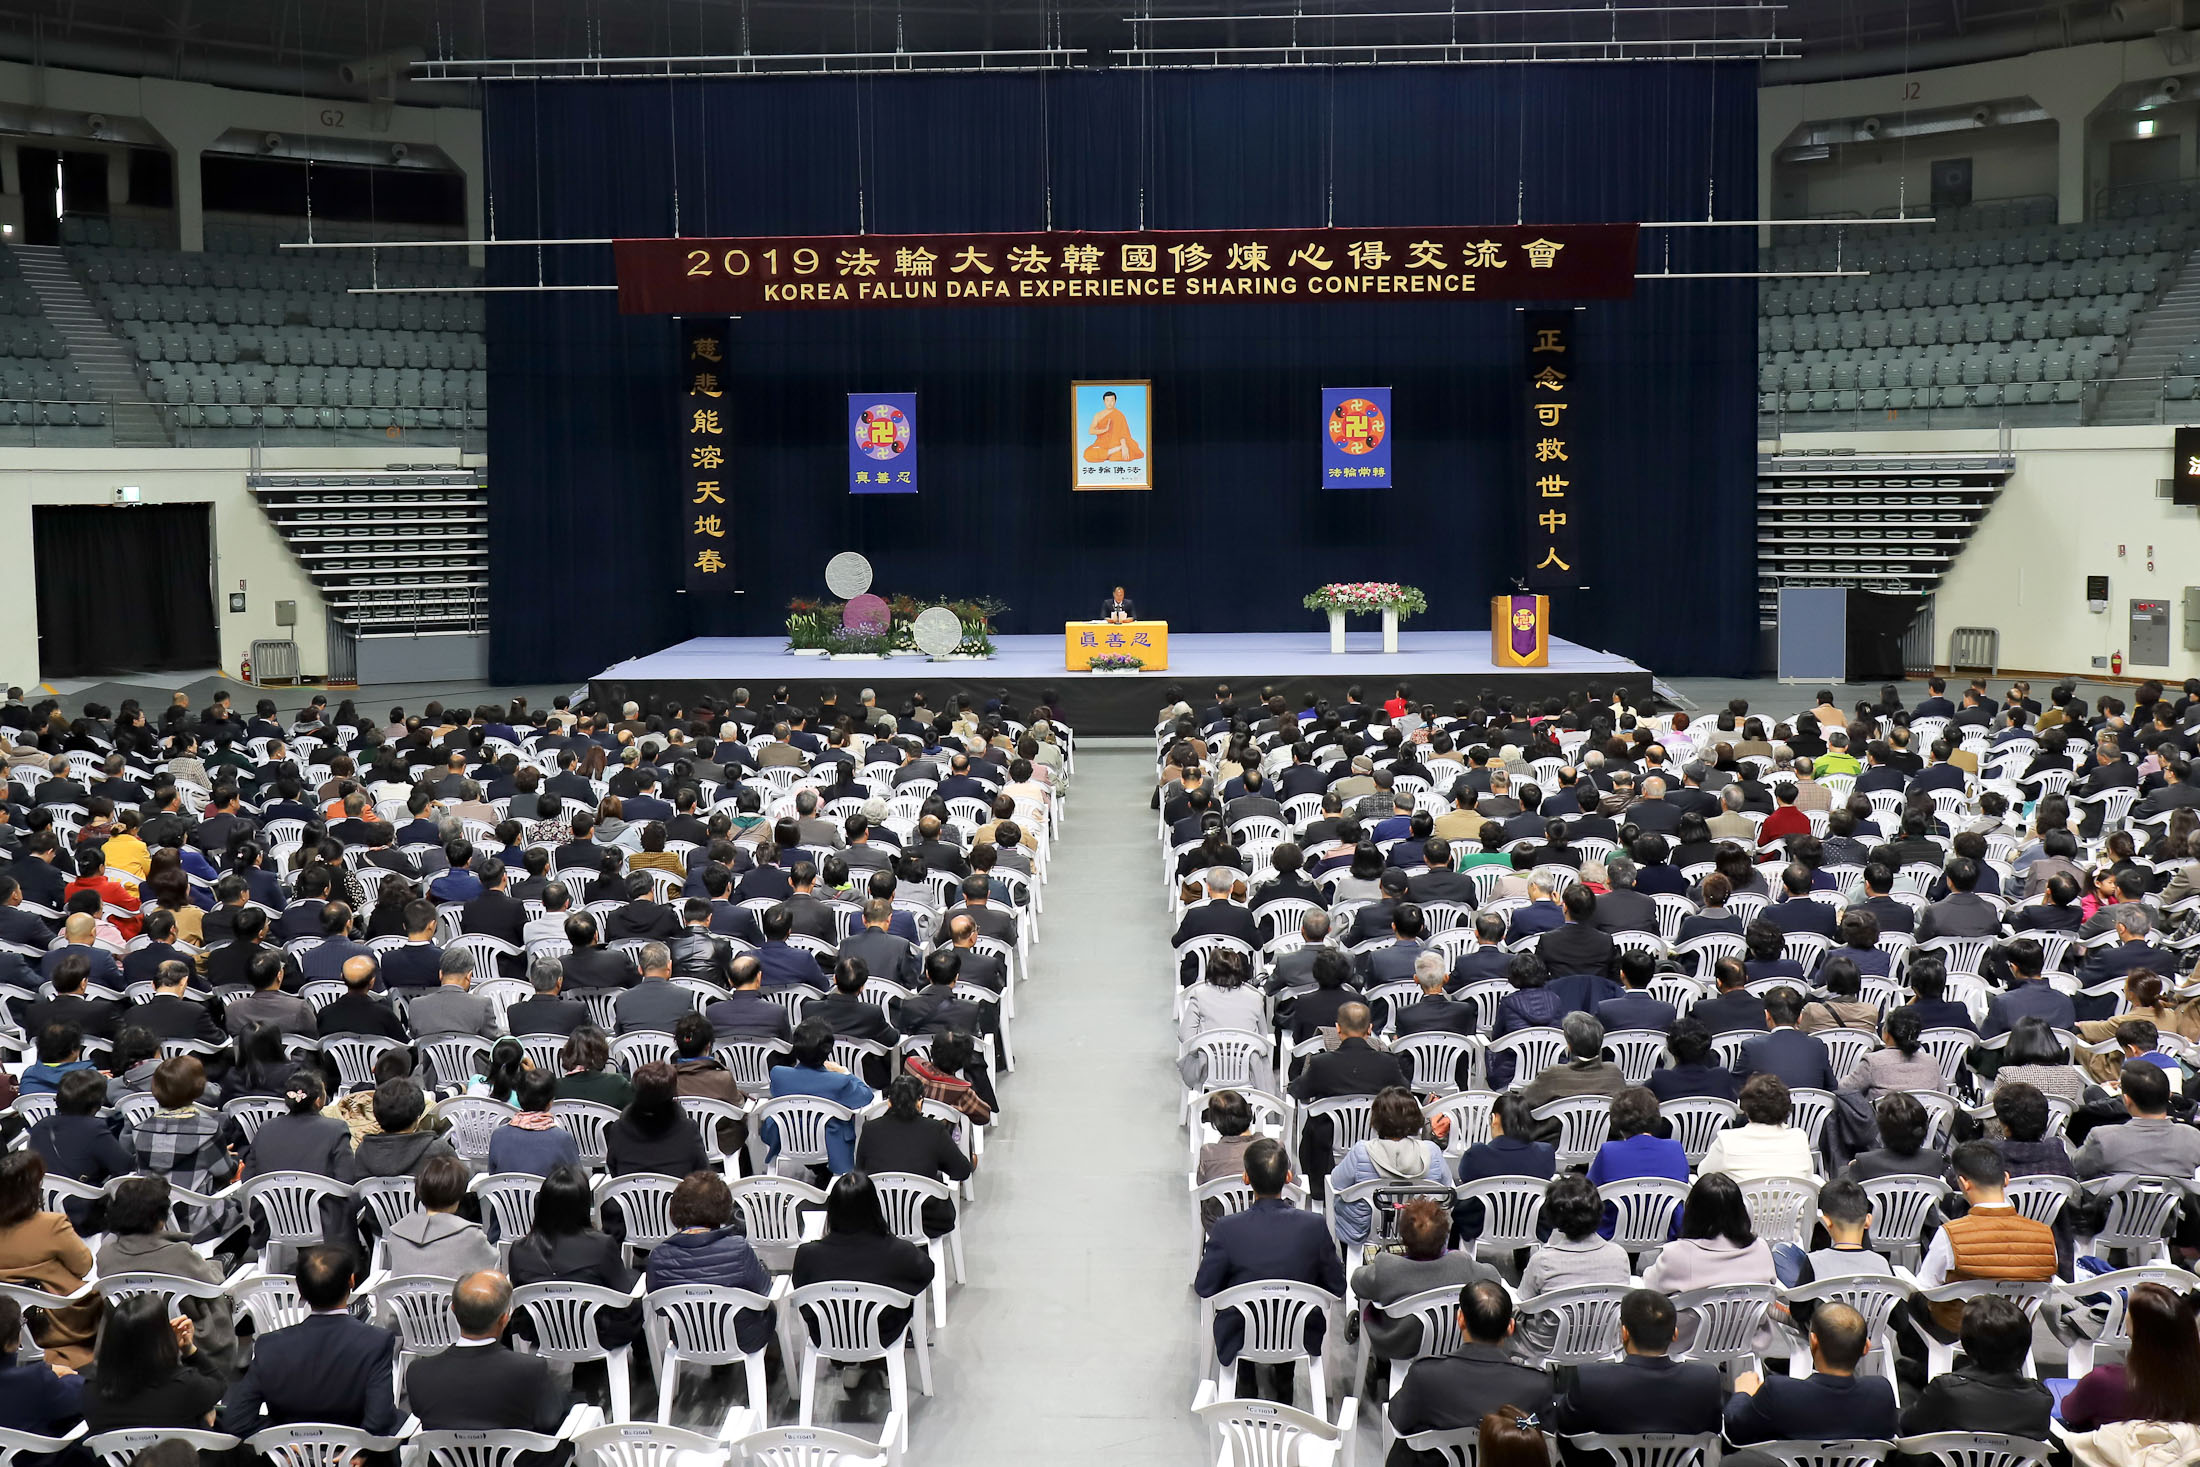 Image for article Corée : Les pratiquants discutent de comment les principes du Falun Dafa leur ont apporté des changements positifs lors de la conférence de partage d'expérience à Séoul